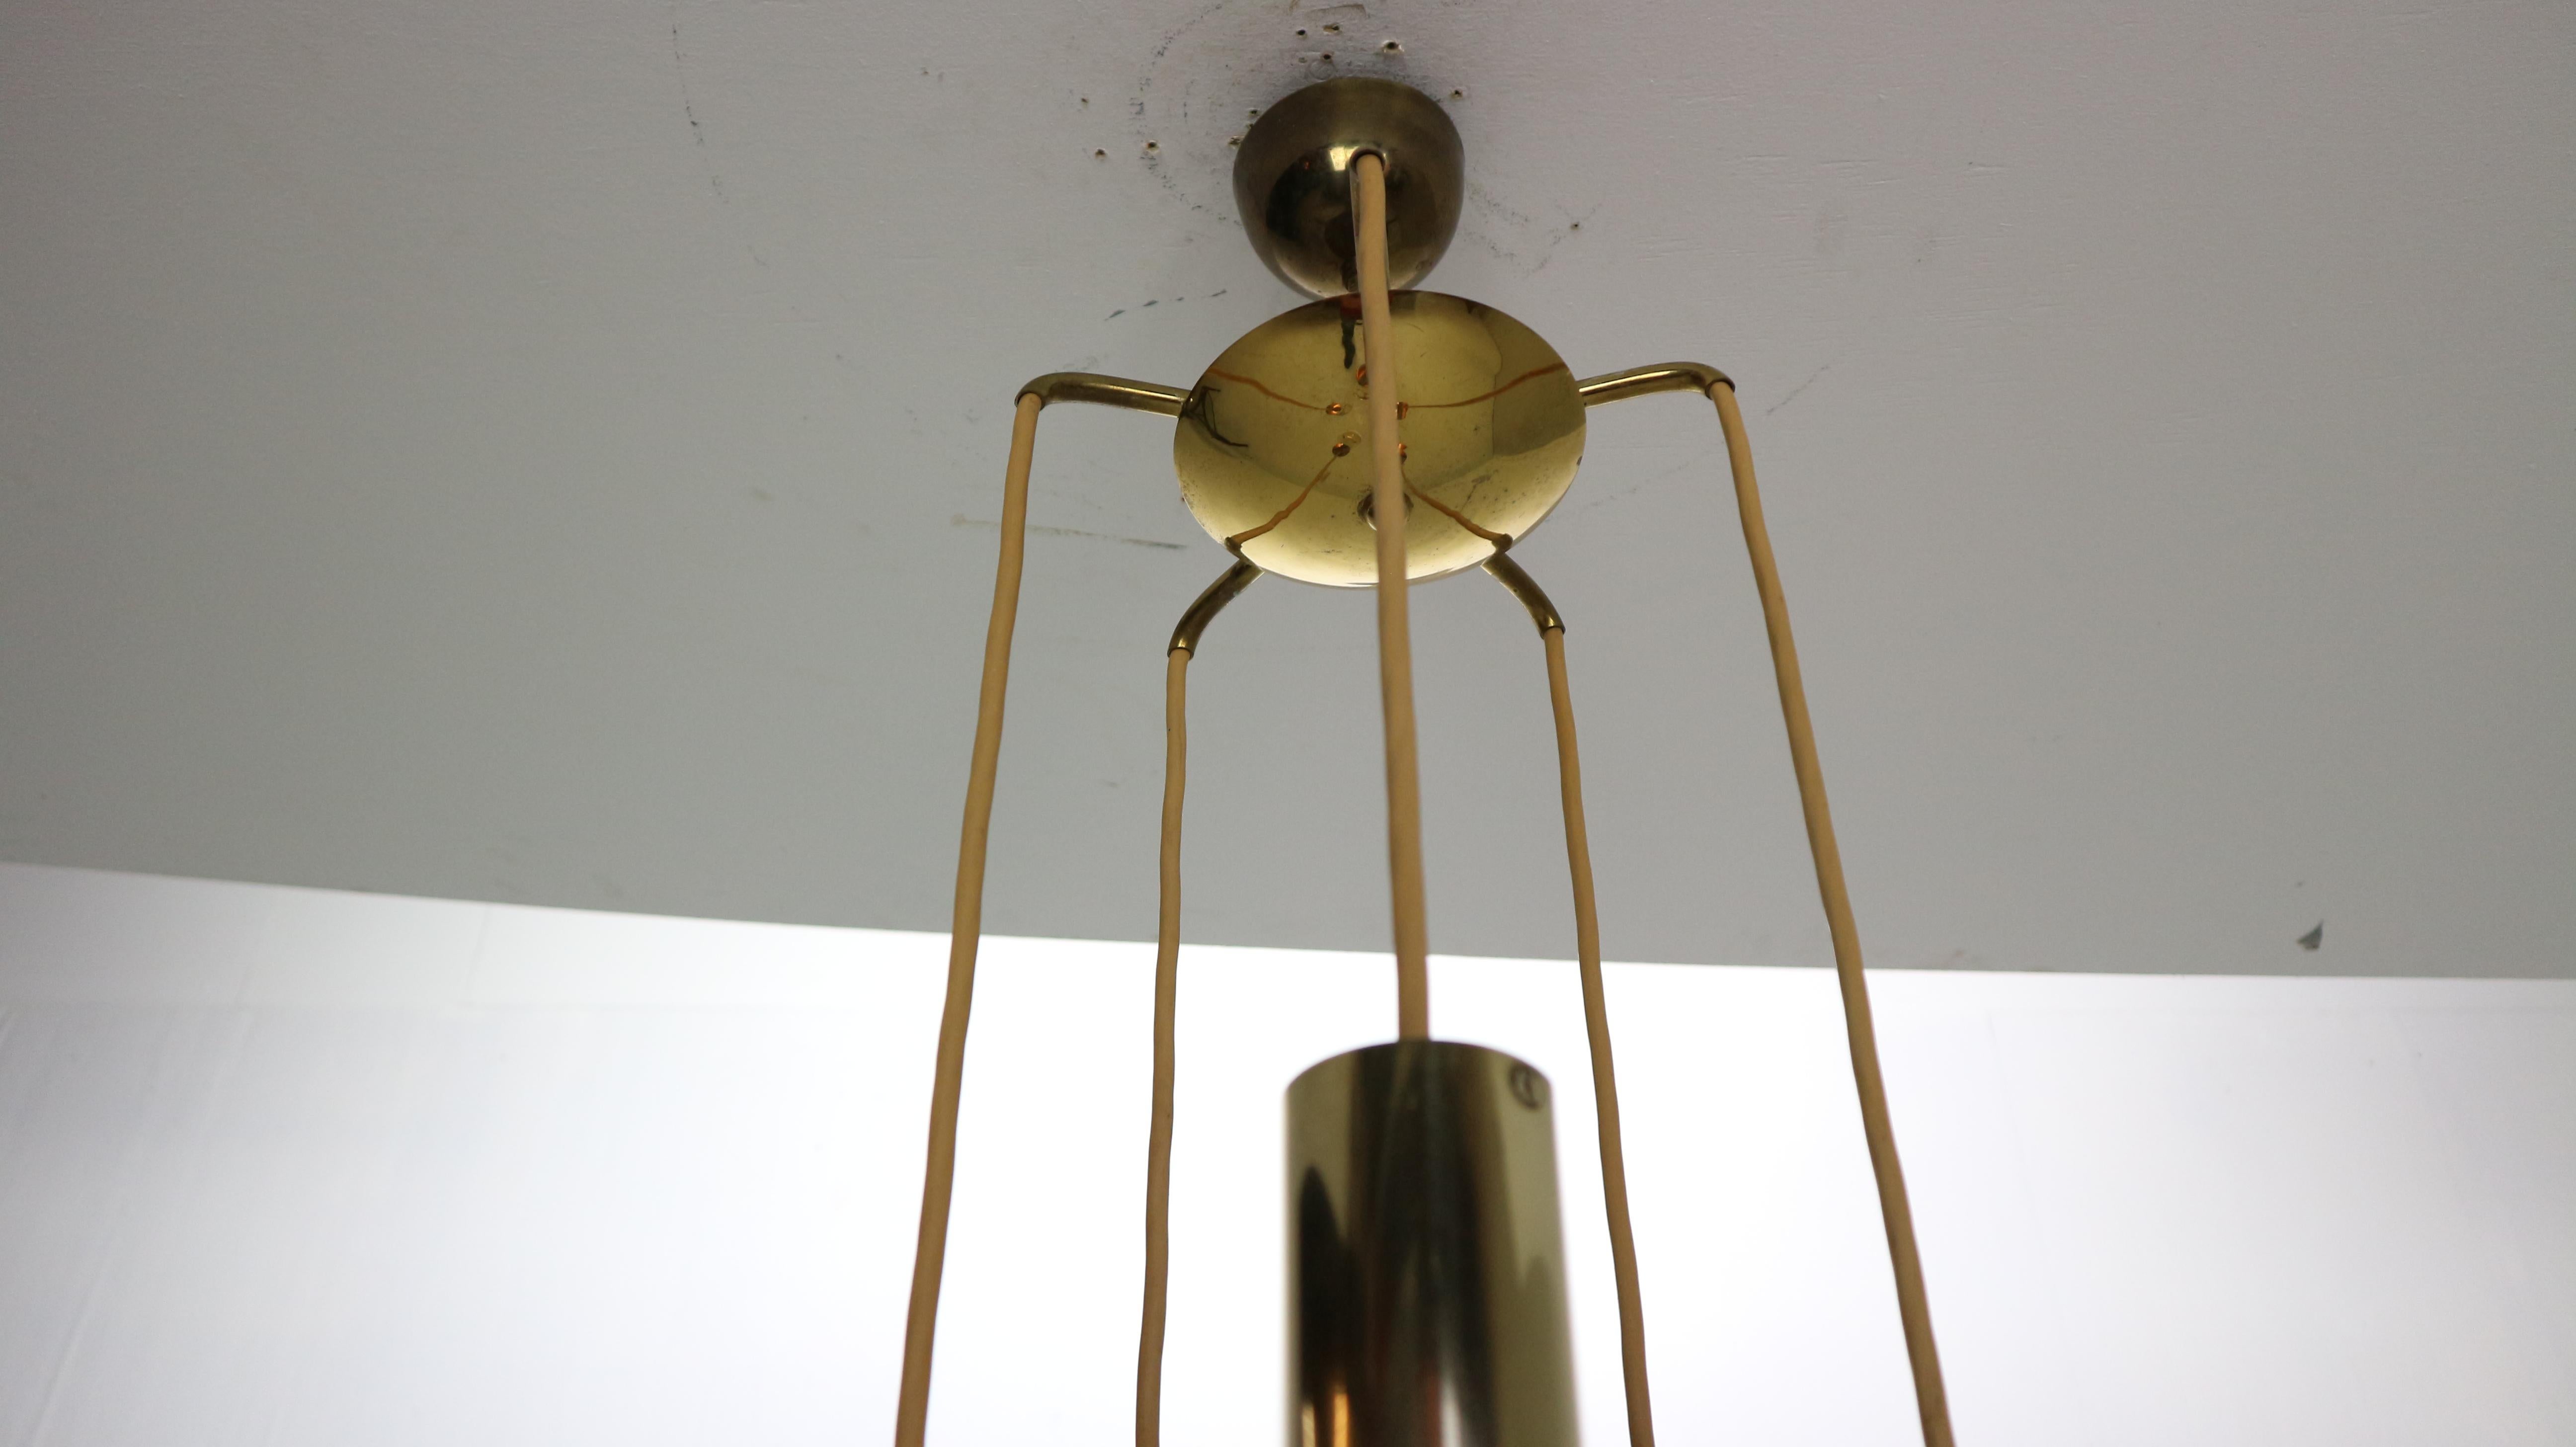 Gino Sarfatti SP/ 16 For Arteluce Unique Brass Bubble Pendant Lamp, 1950, Italy For Sale 9